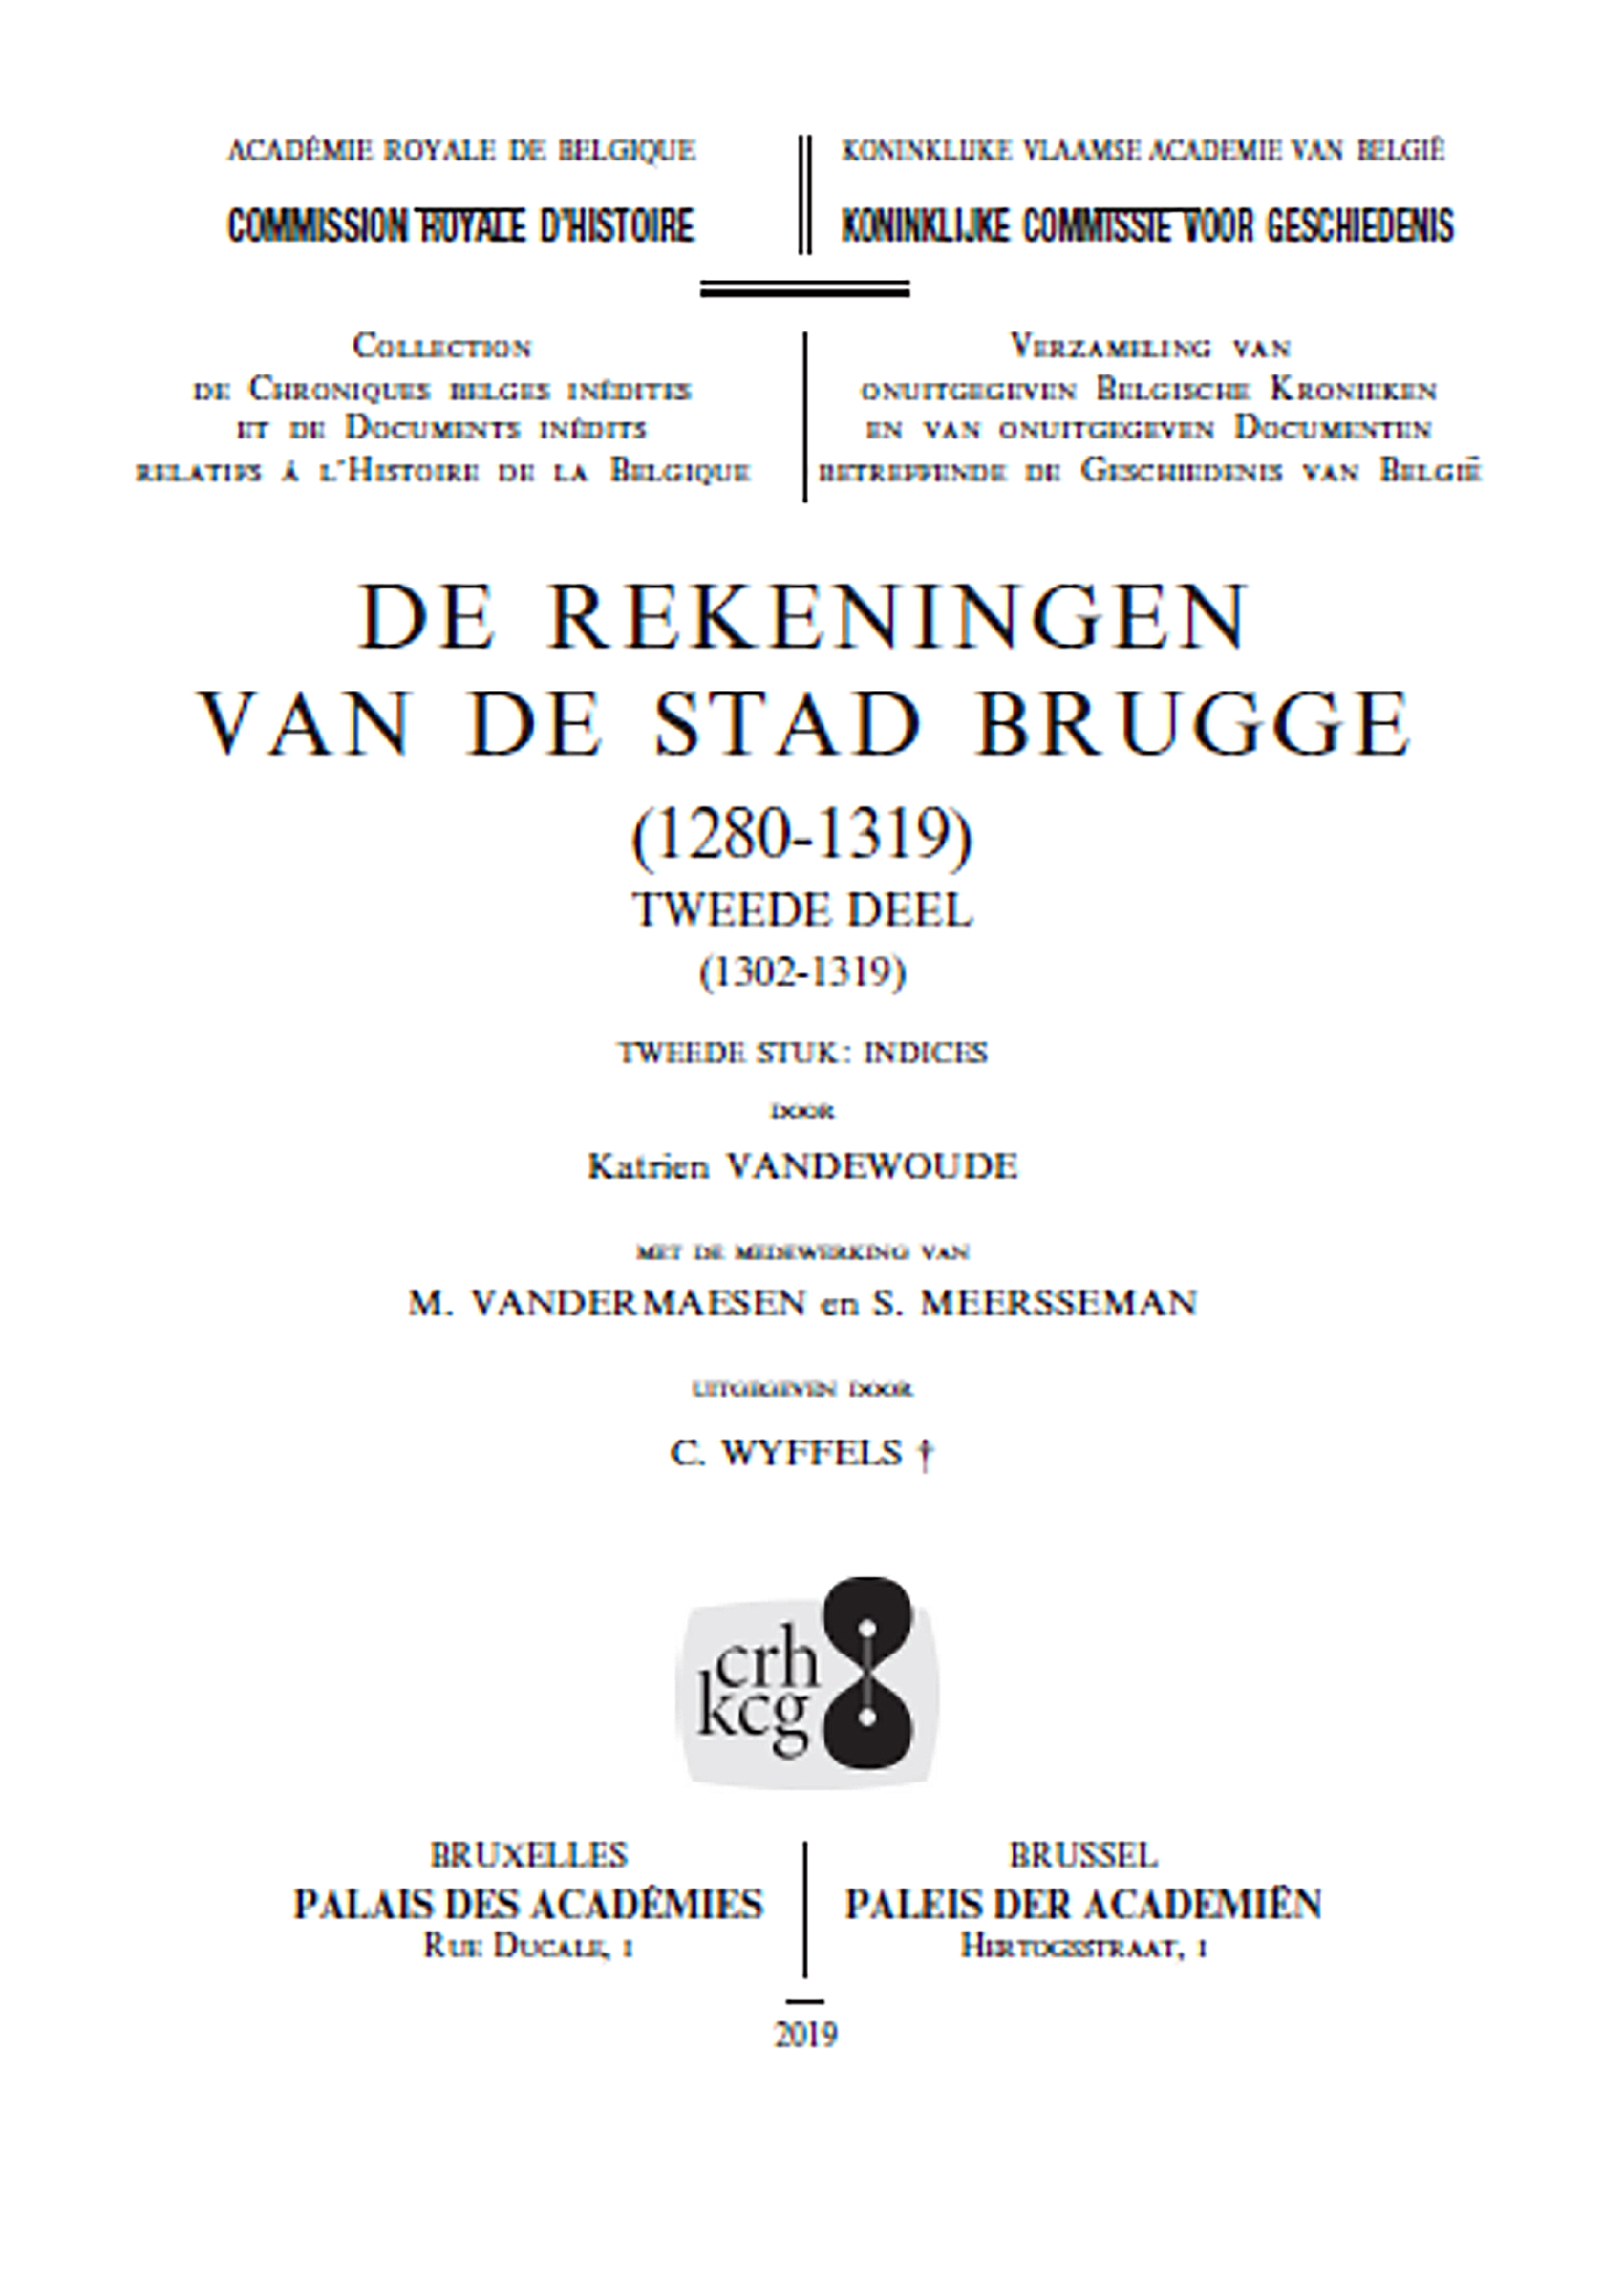 DE REKENINGEN VAN DE STAD BRUGGE (1280-1319) - TWEE DELEN IN VIJF VOLUMES (kcg)